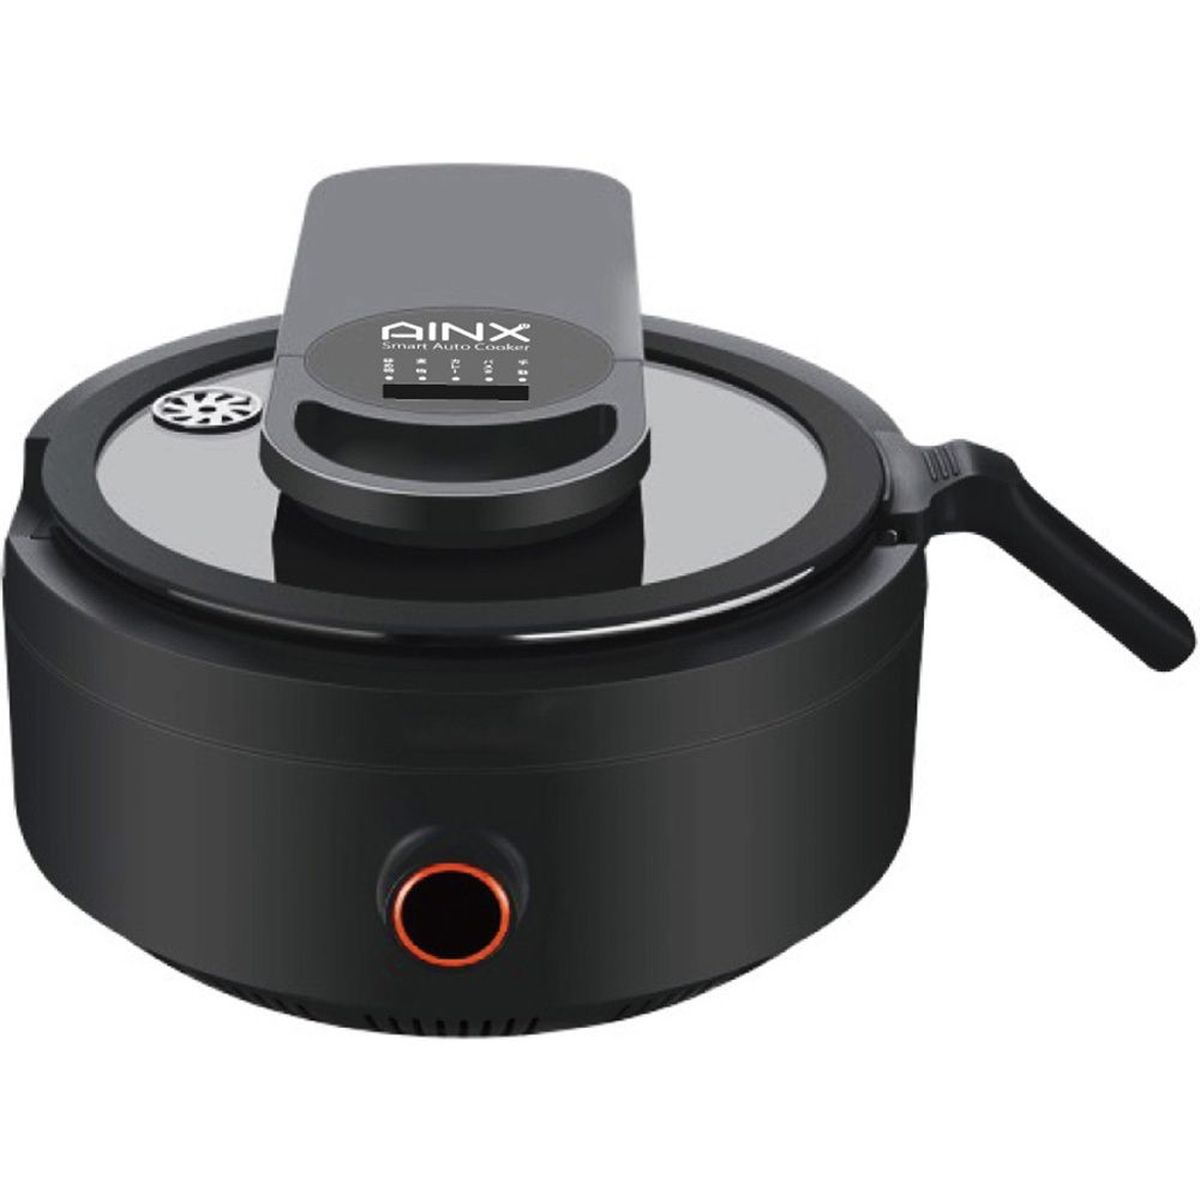 AINX キッチン家電 Smart Auto Cooker 全自動調理器 ブラック